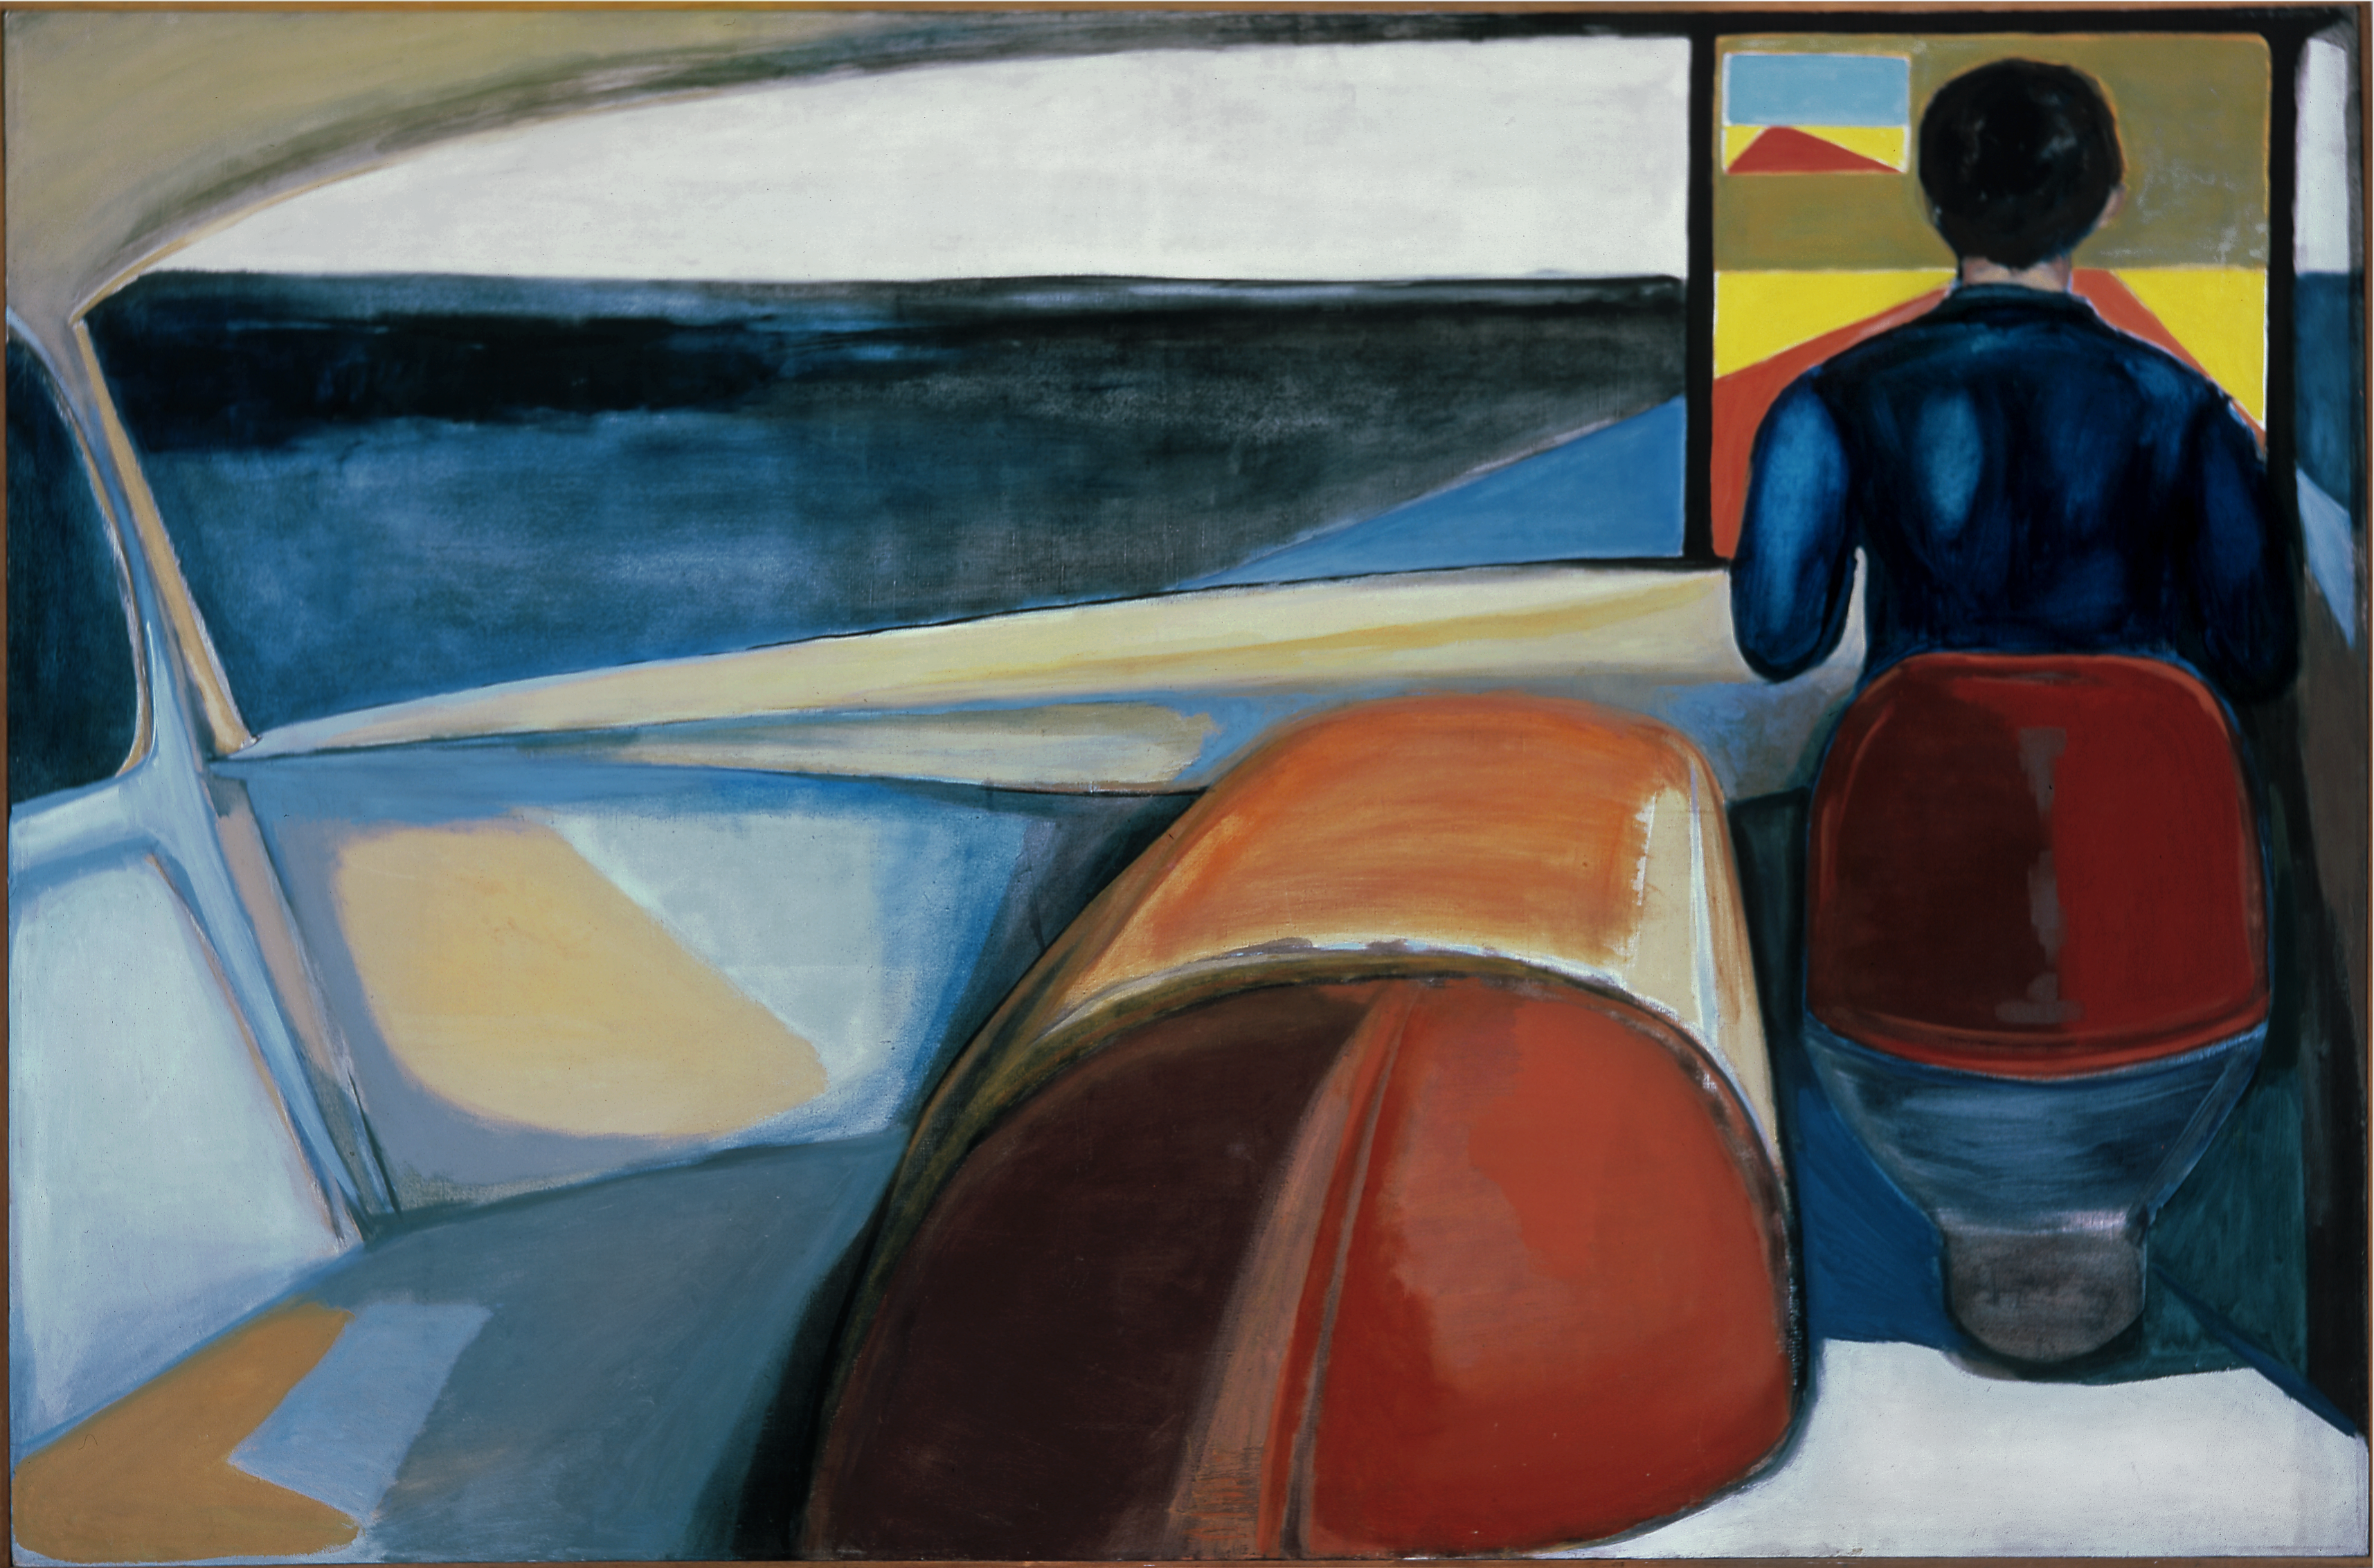 司机 by 安德热伊 沃布列夫斯基 - 1956 - 132 × 200.5 cm 